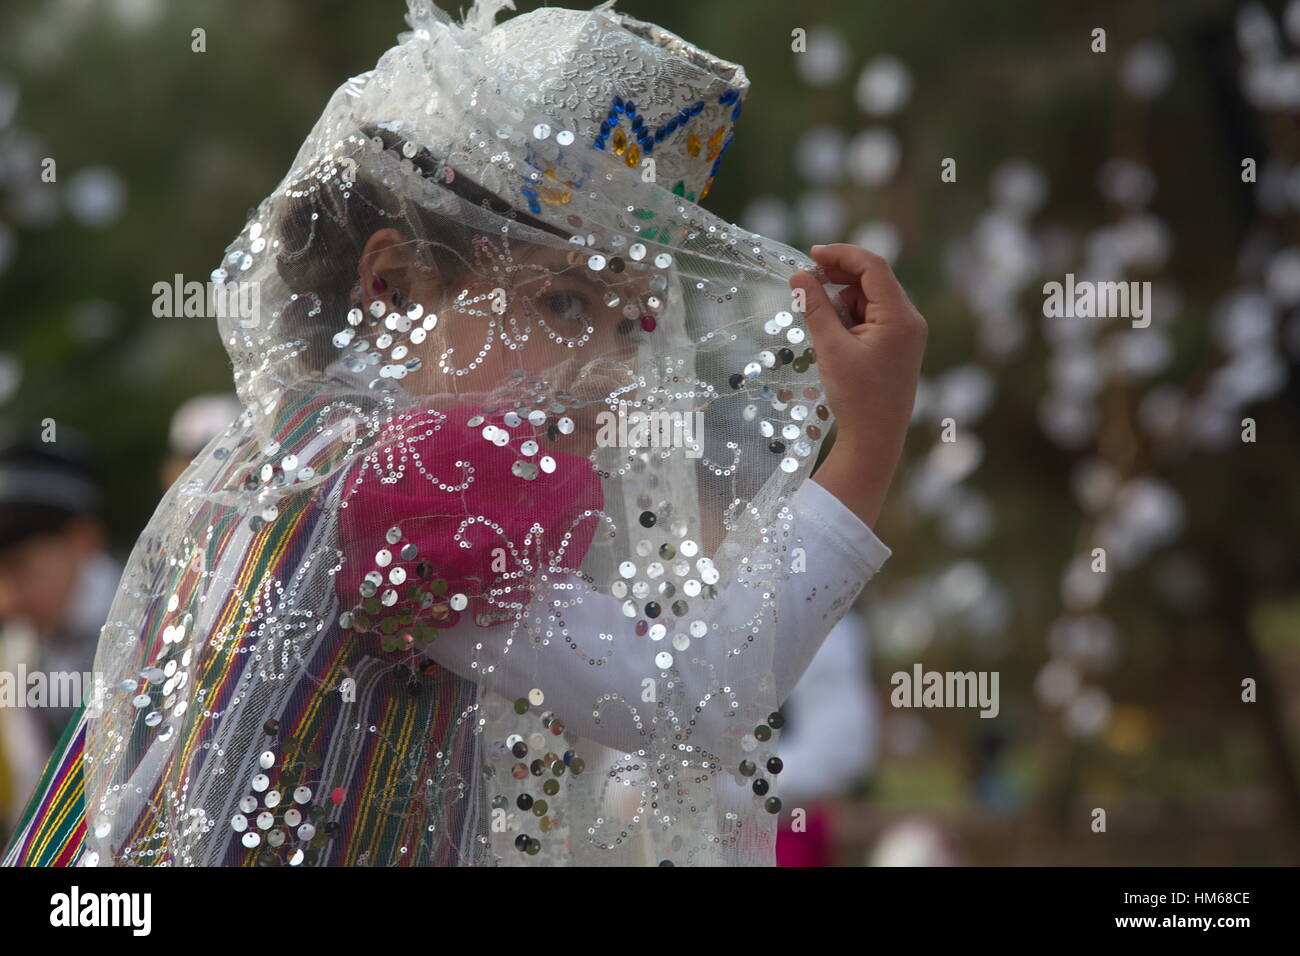 Ragazze Danza tradizionale danza orientale durante la celebrazione del Navruz nella città di Khujand nella Repubblica di Tagikistan Foto Stock